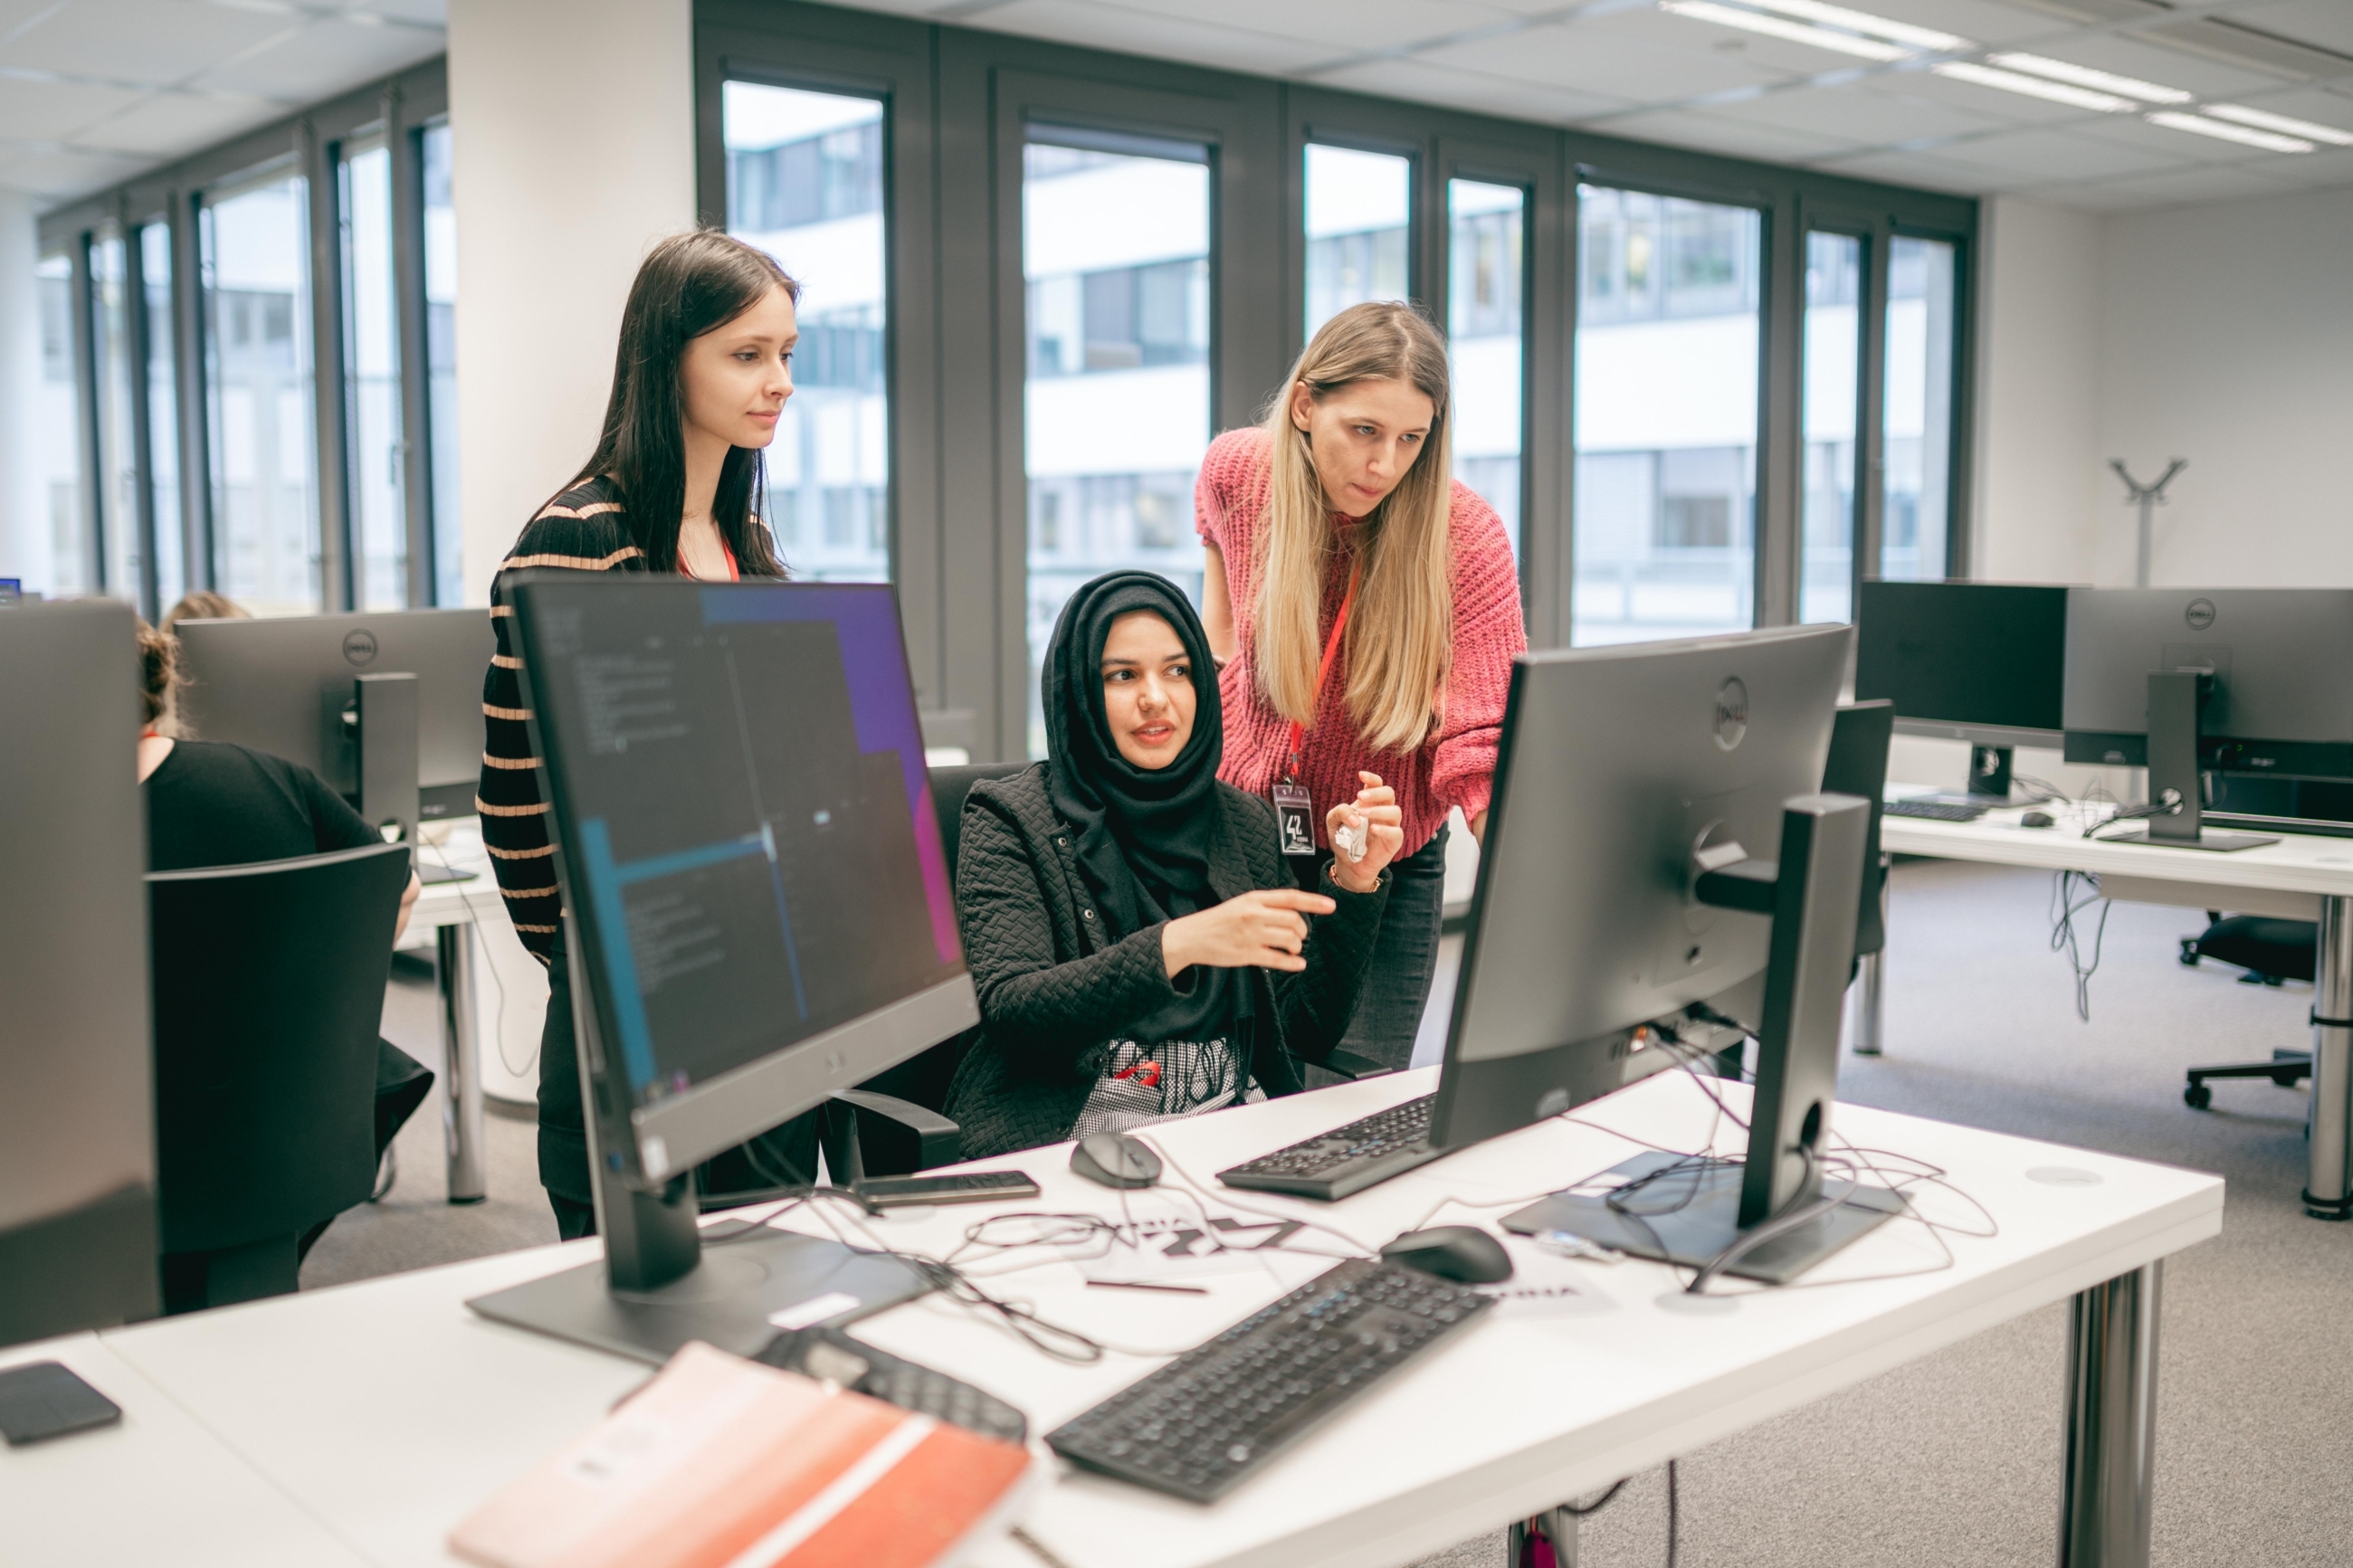 Eine Frau sitzt vor einem Computer und unterhält sich dabei mit zwei weiteren Frauen, die rechts und links neben ihr stehen und ebenfalls auf den gleichen Computerbildschirm sehen.